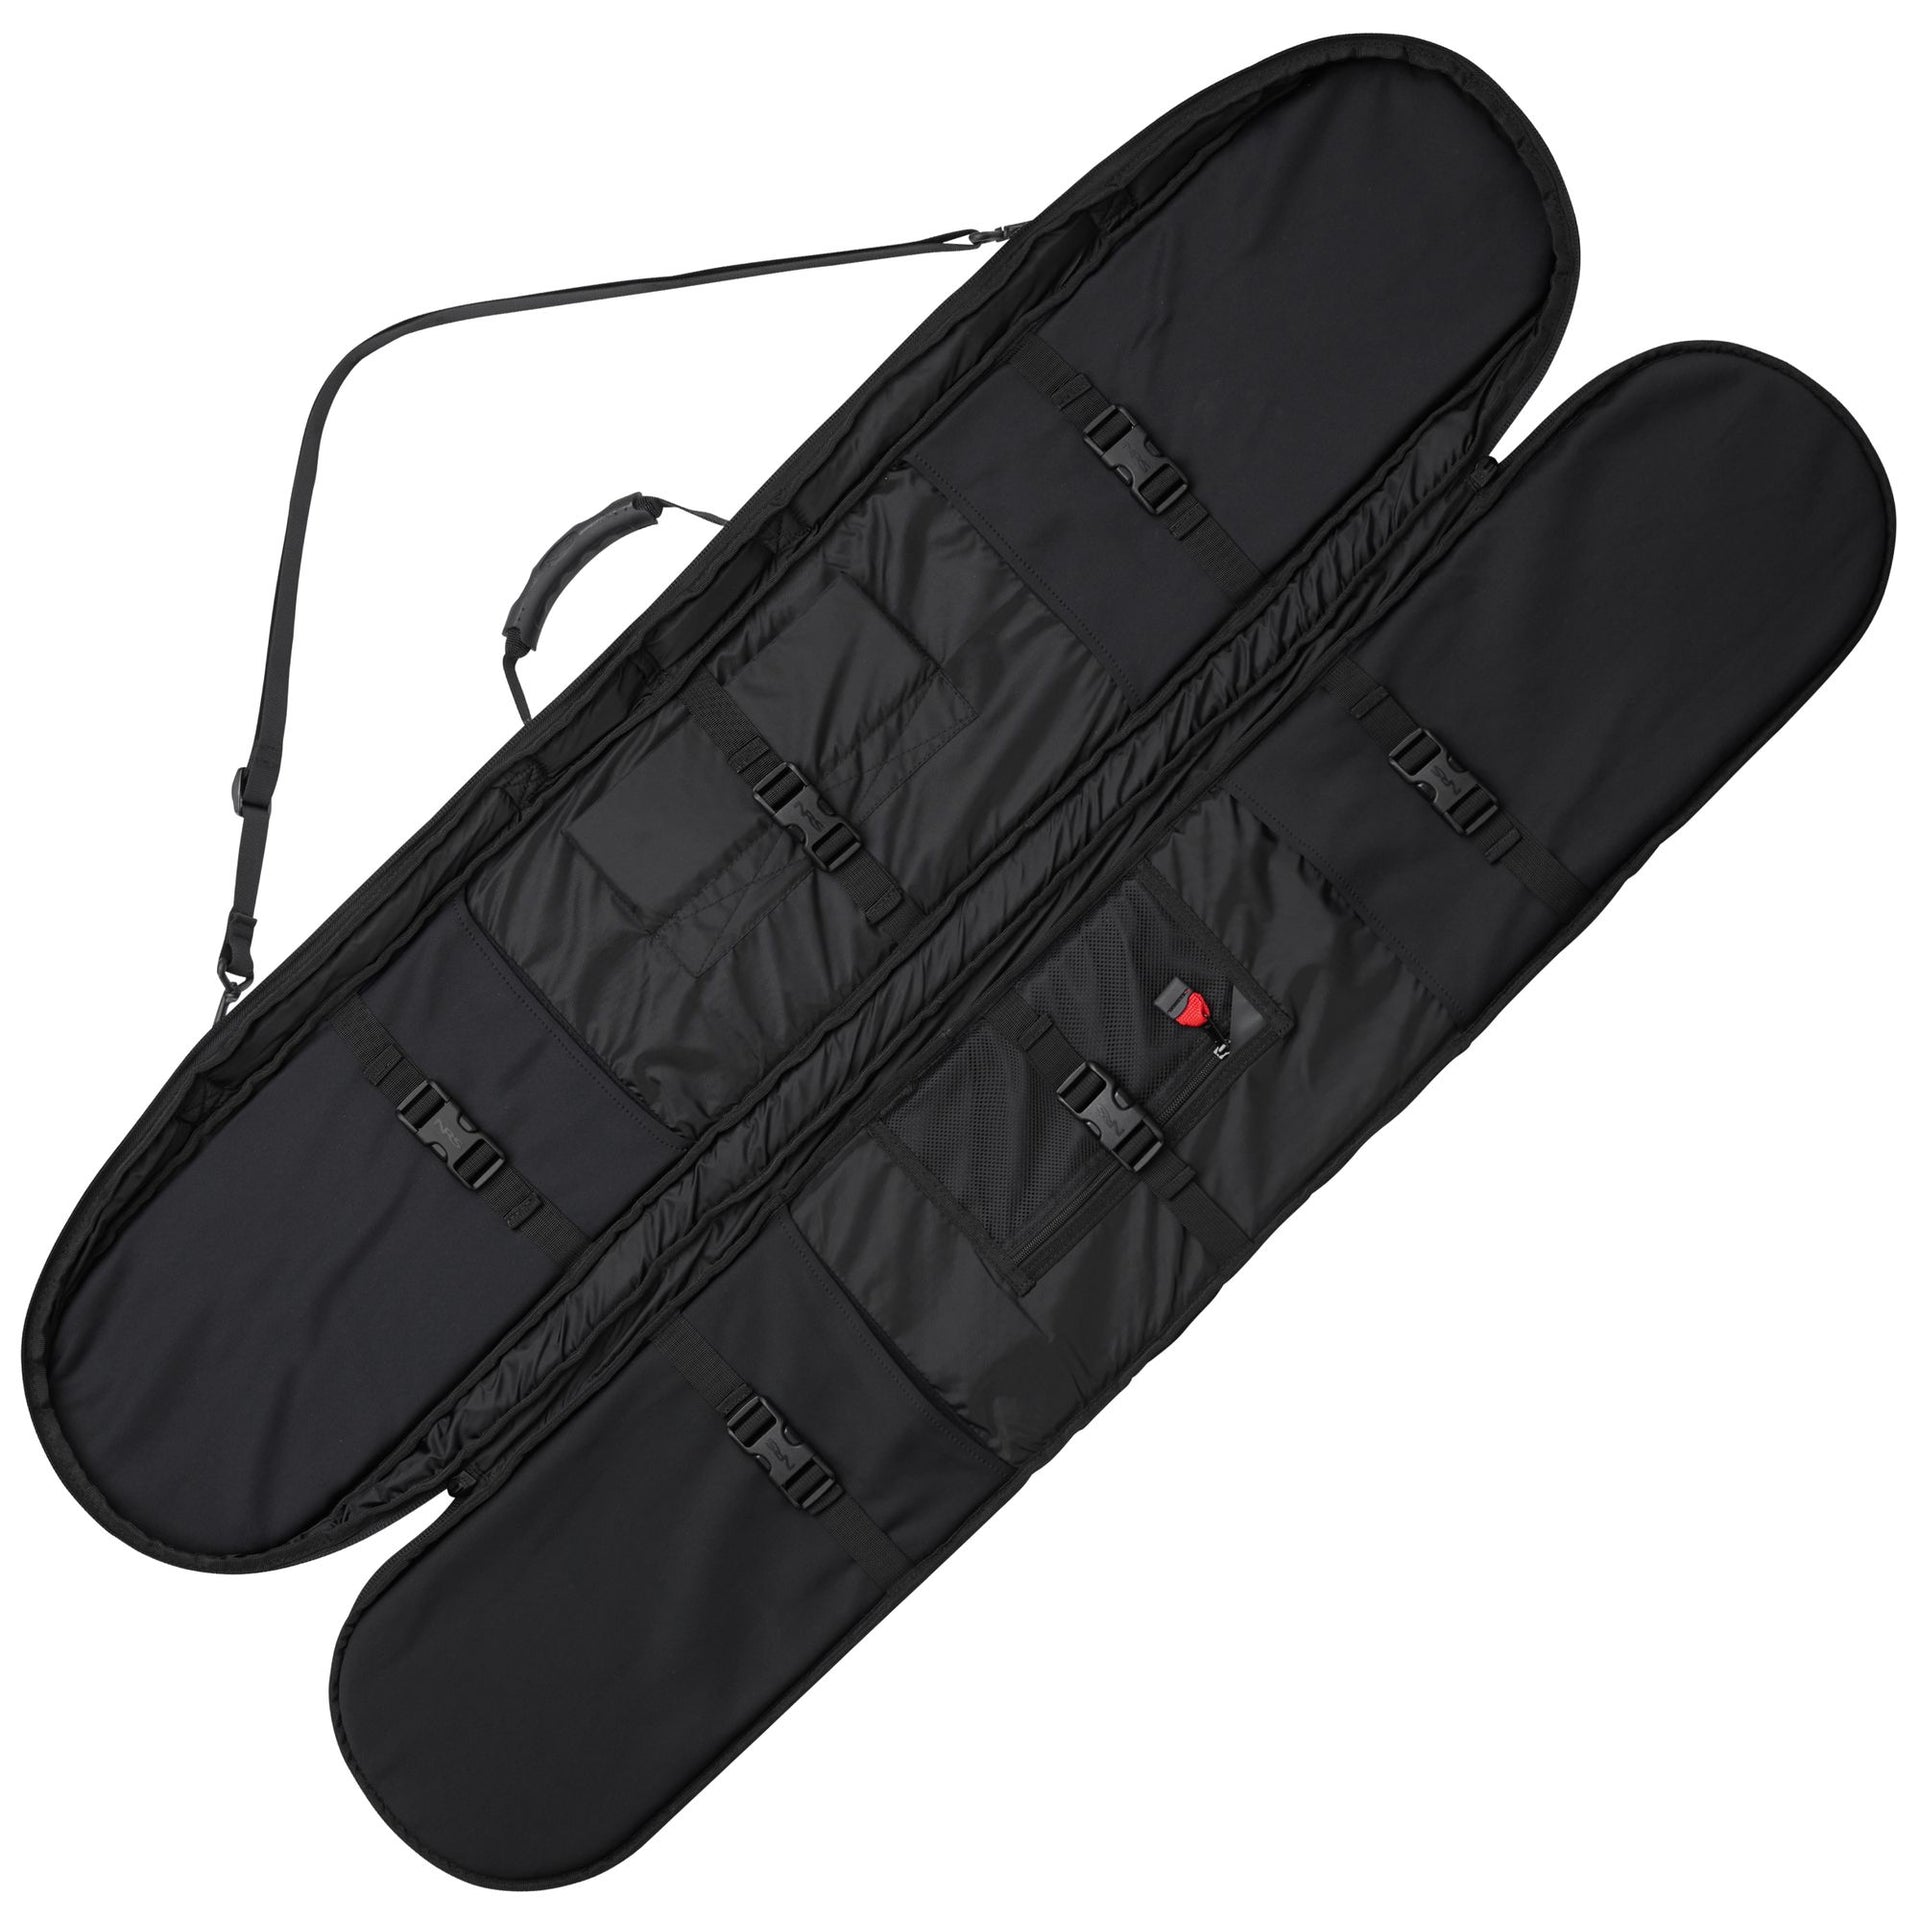 Two-piece Kayak Paddle Bag